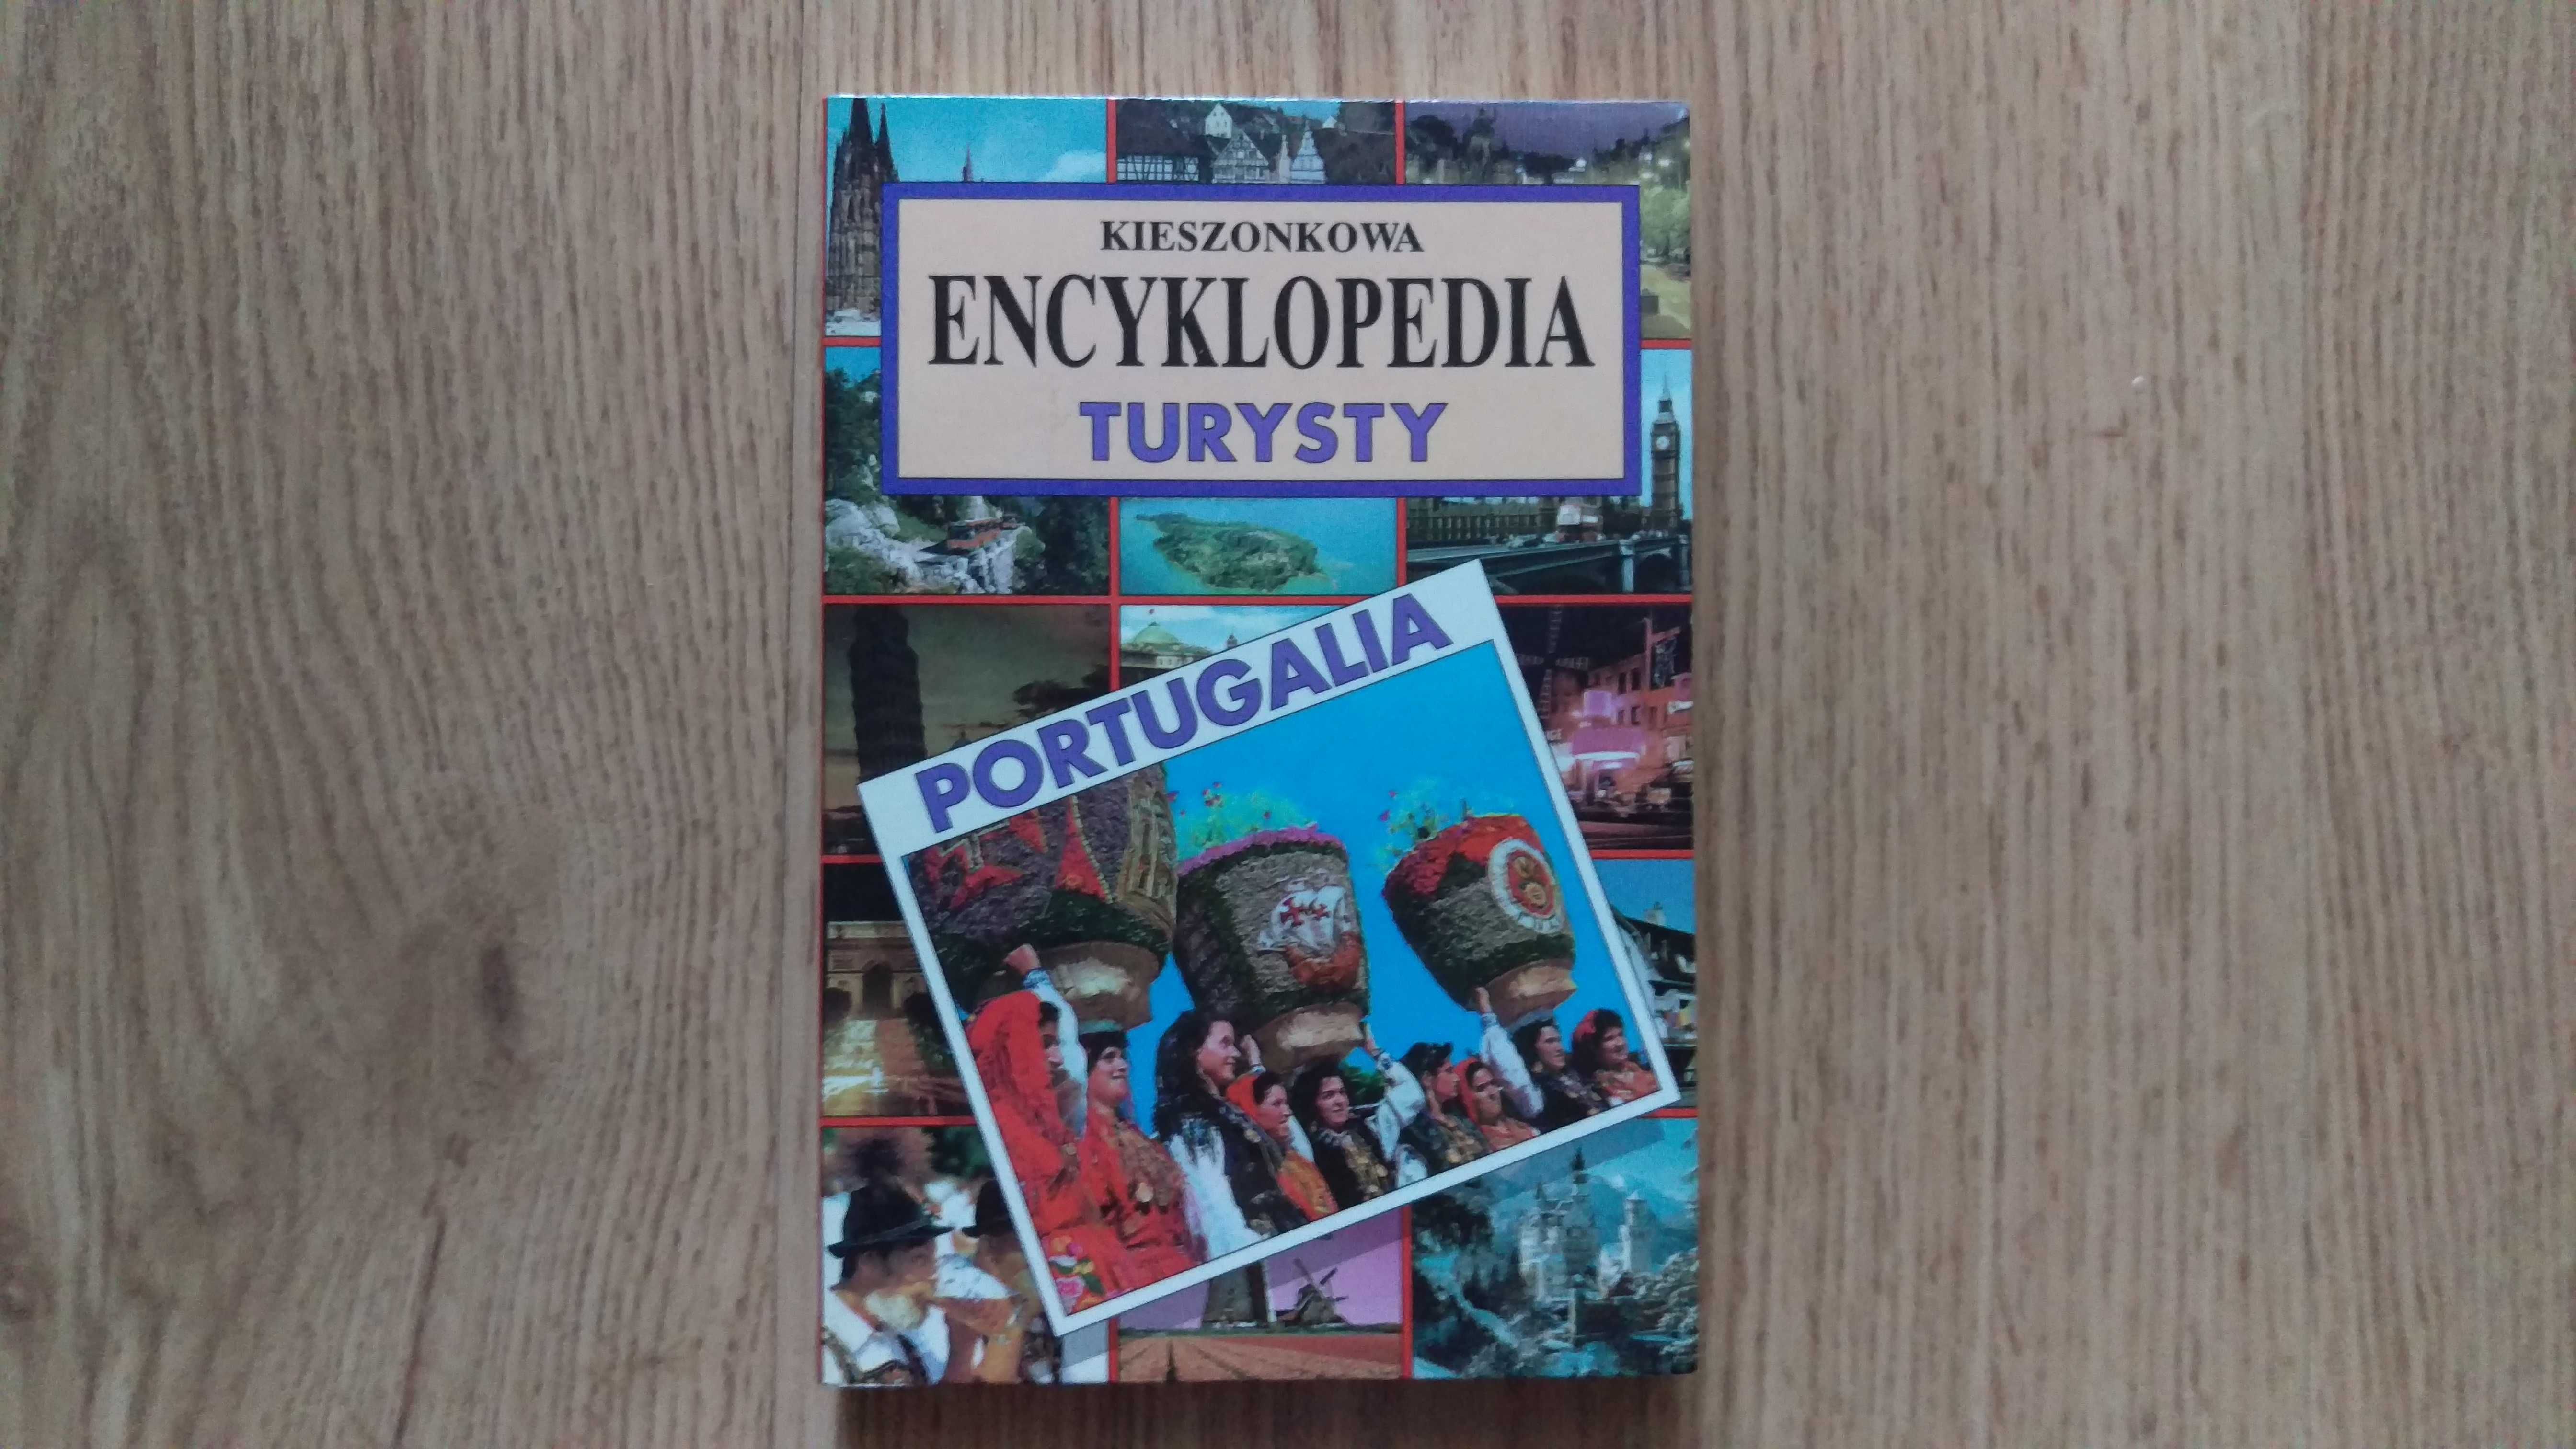 PORTUGALIA Kieszonkowa Encyklopedia Turysty